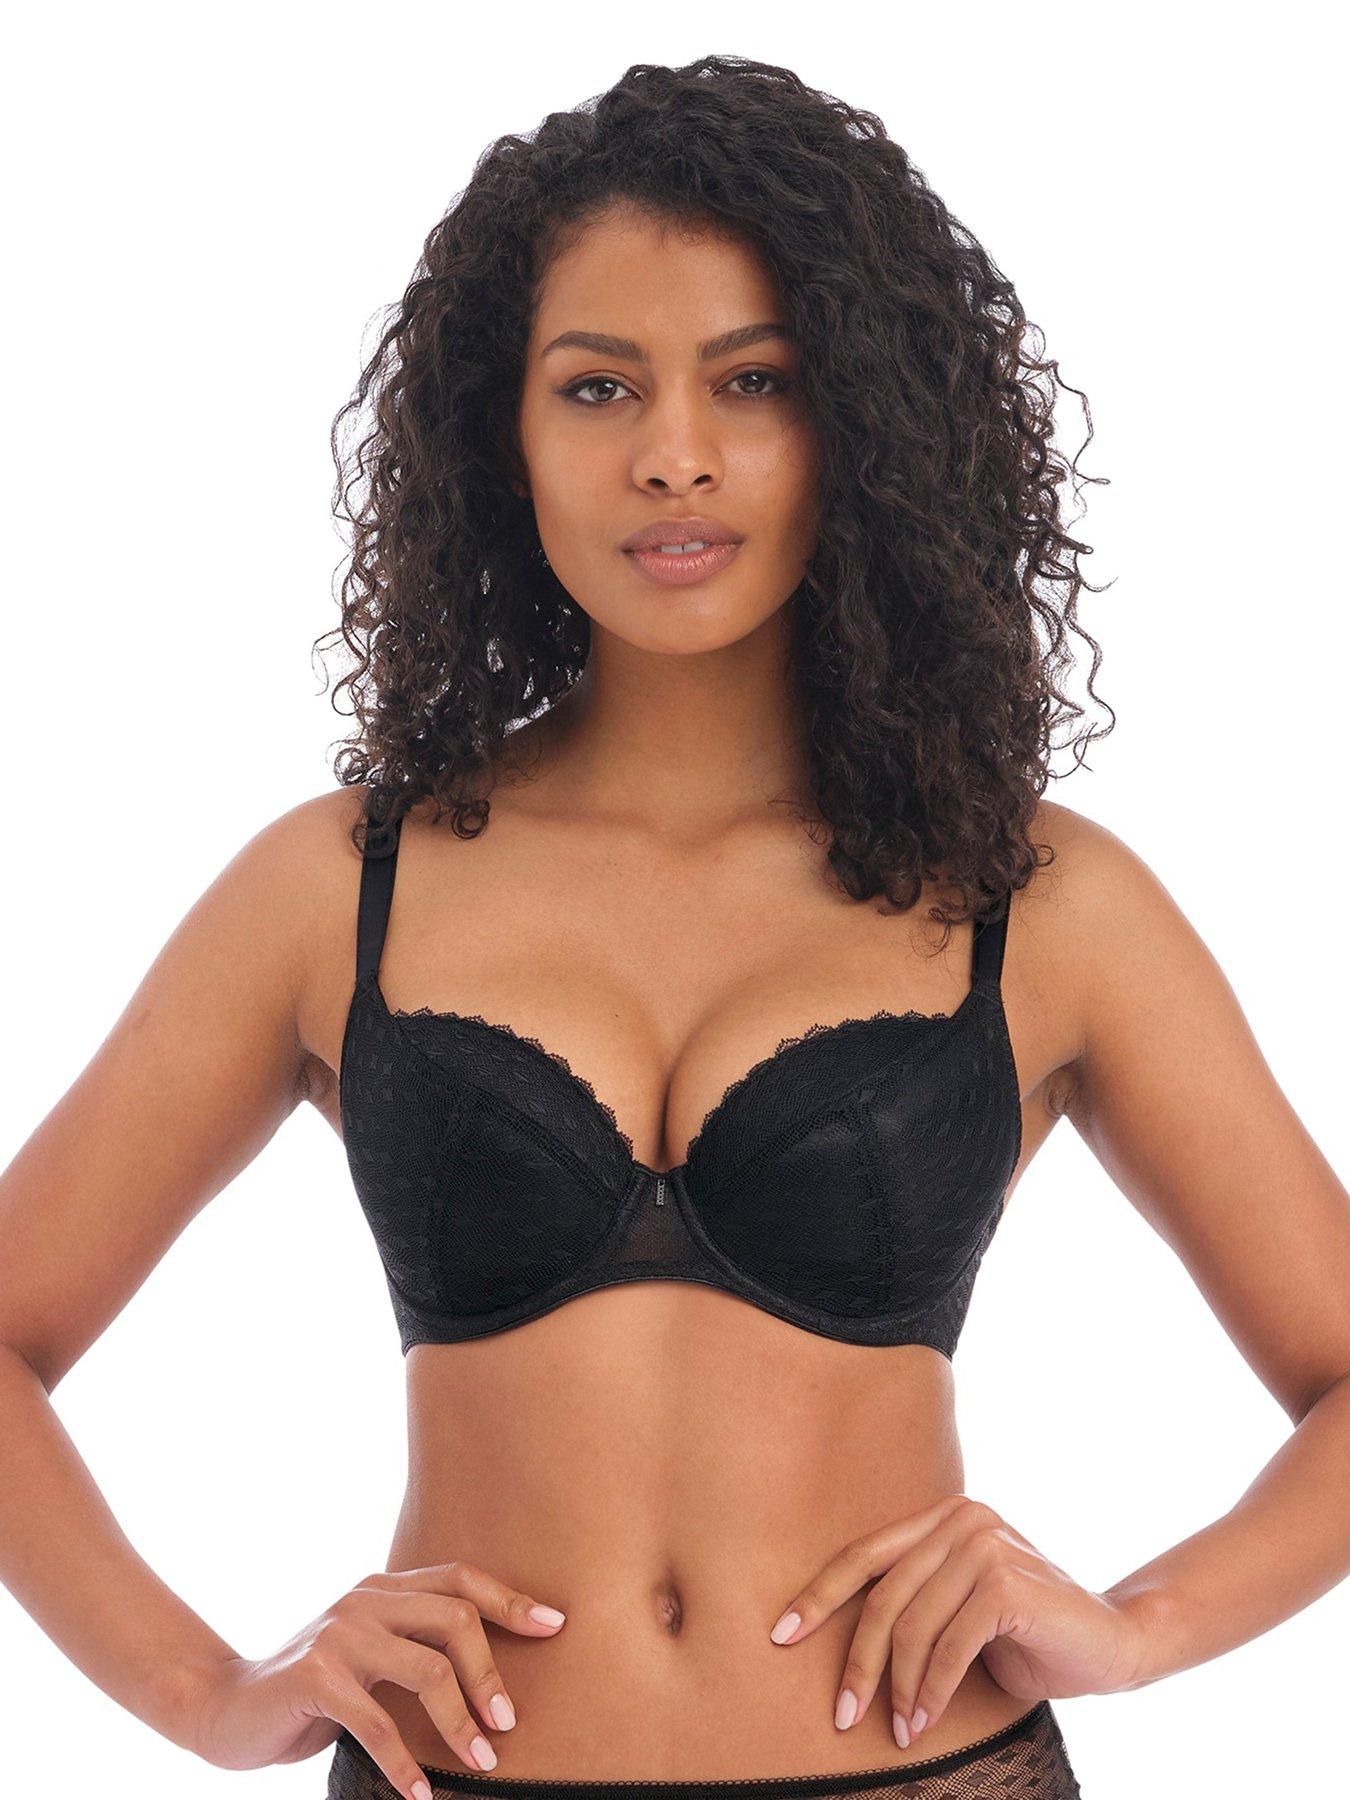 Versace women's underwear bra size 65 - 85; cup AA - D